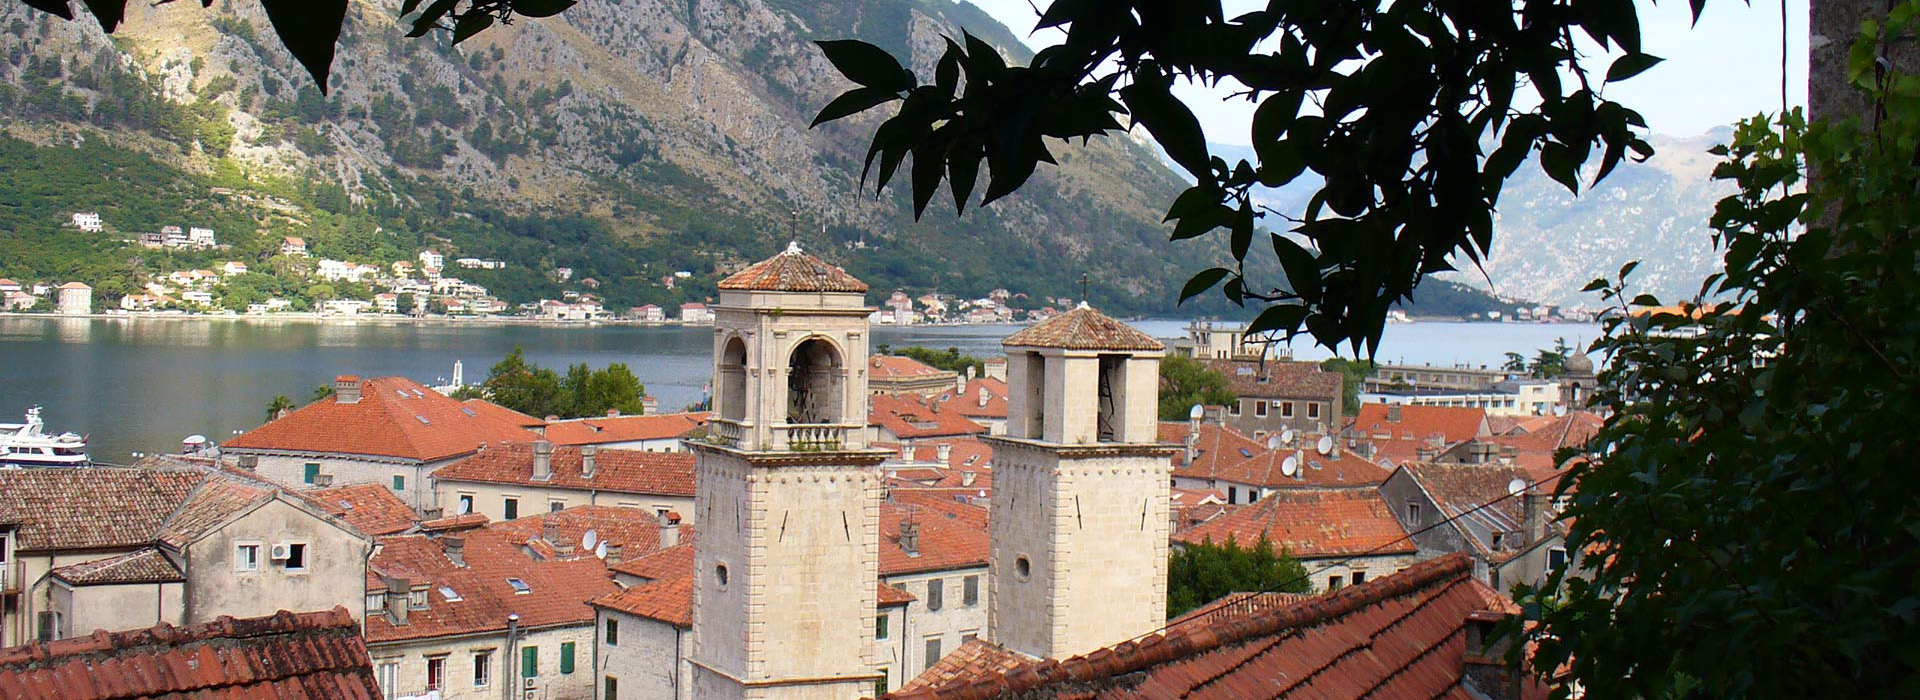 Montenegro walking self-guided holiday - Kotor